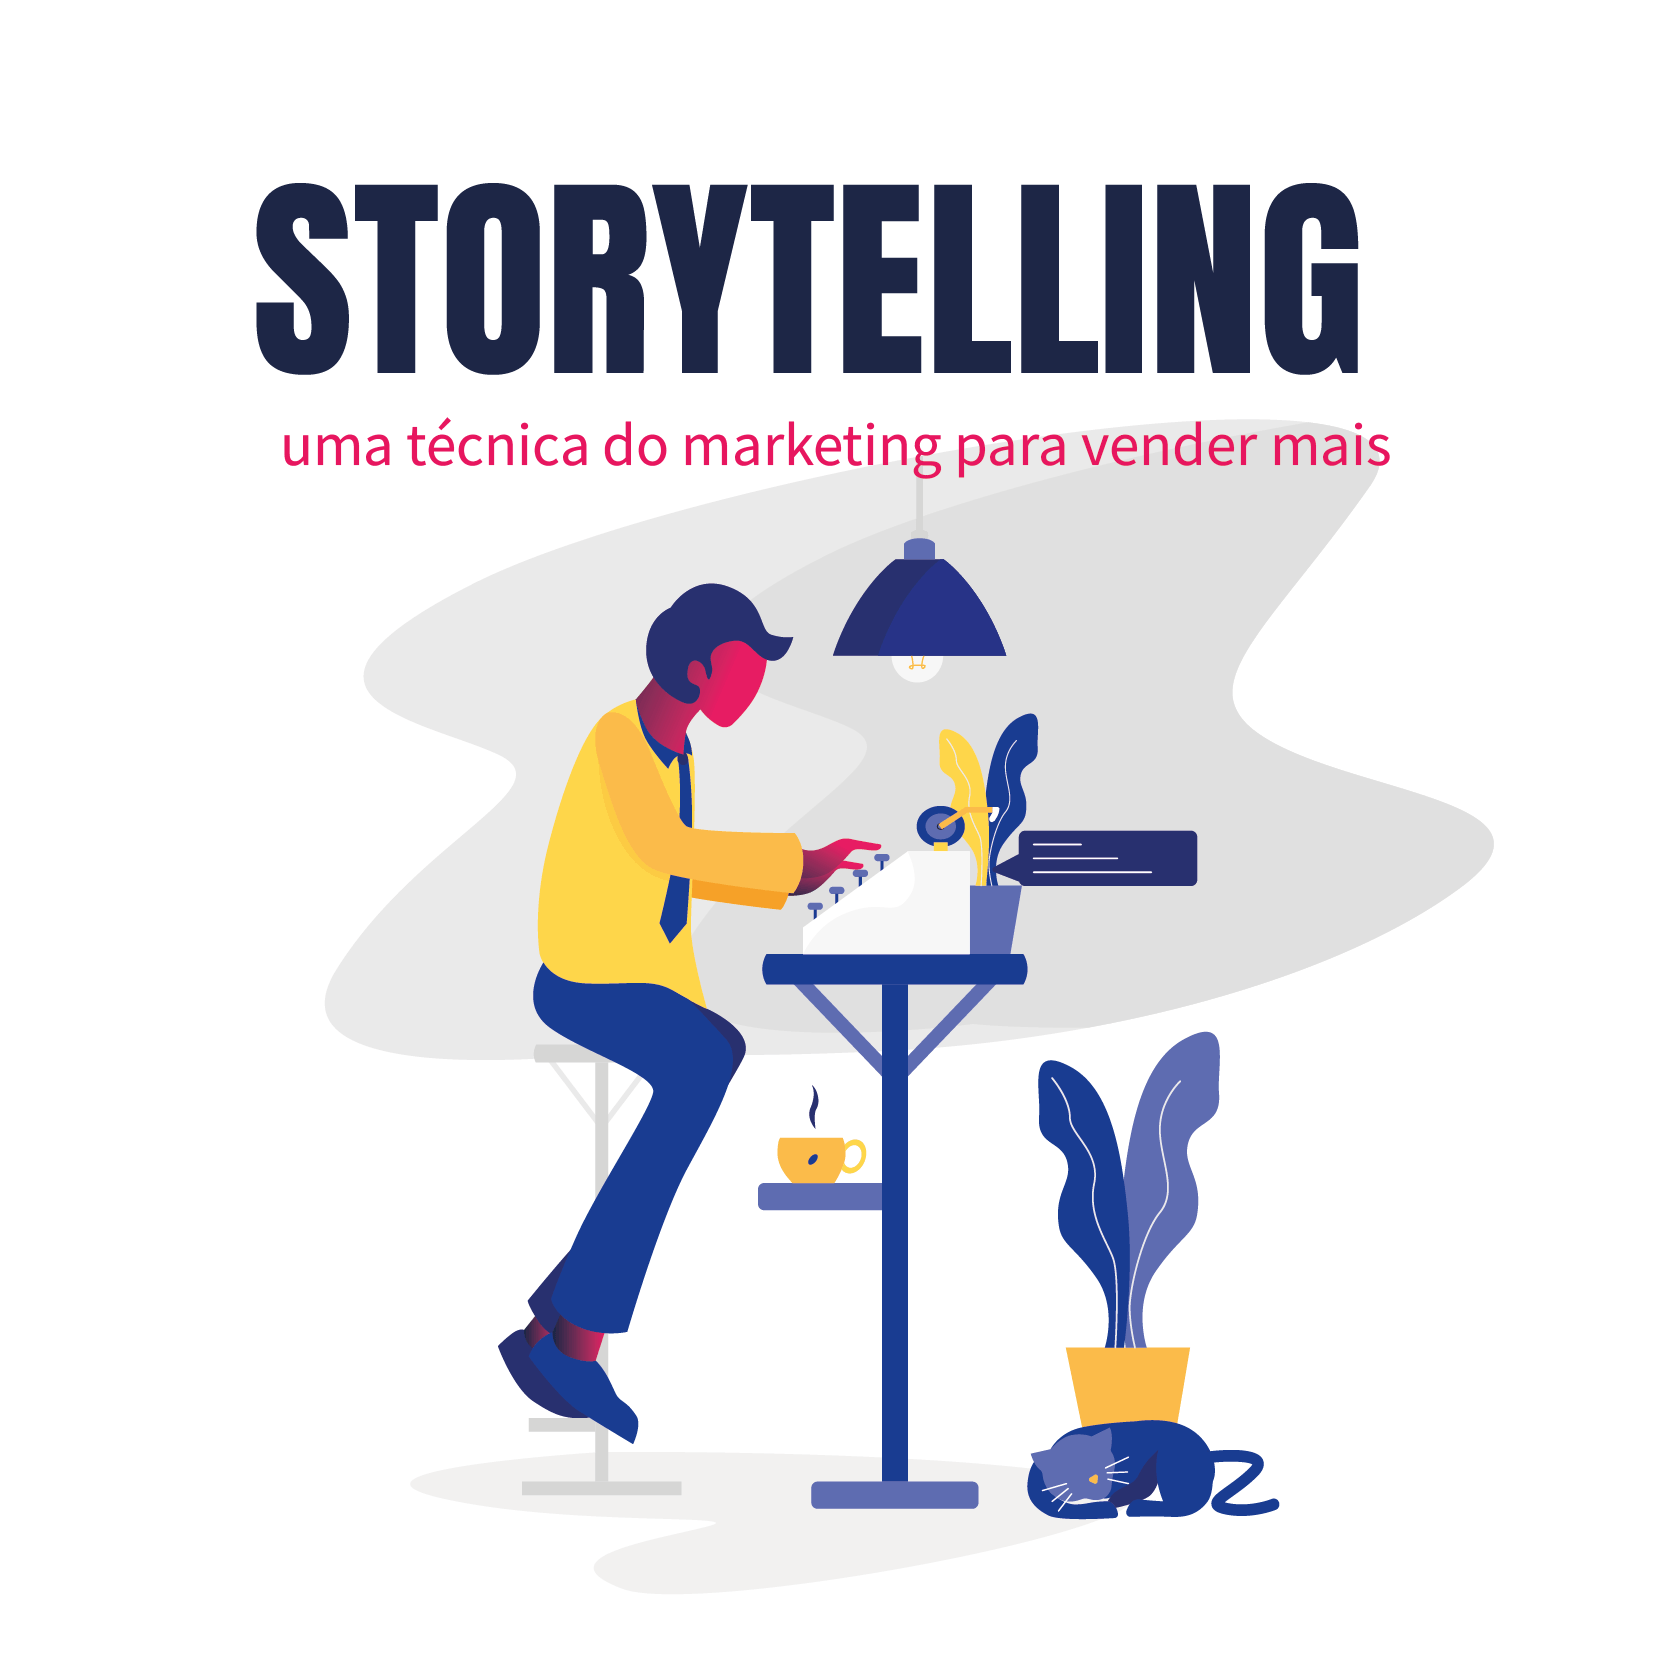 Storytelling - uma técnica do marketing para vender mais